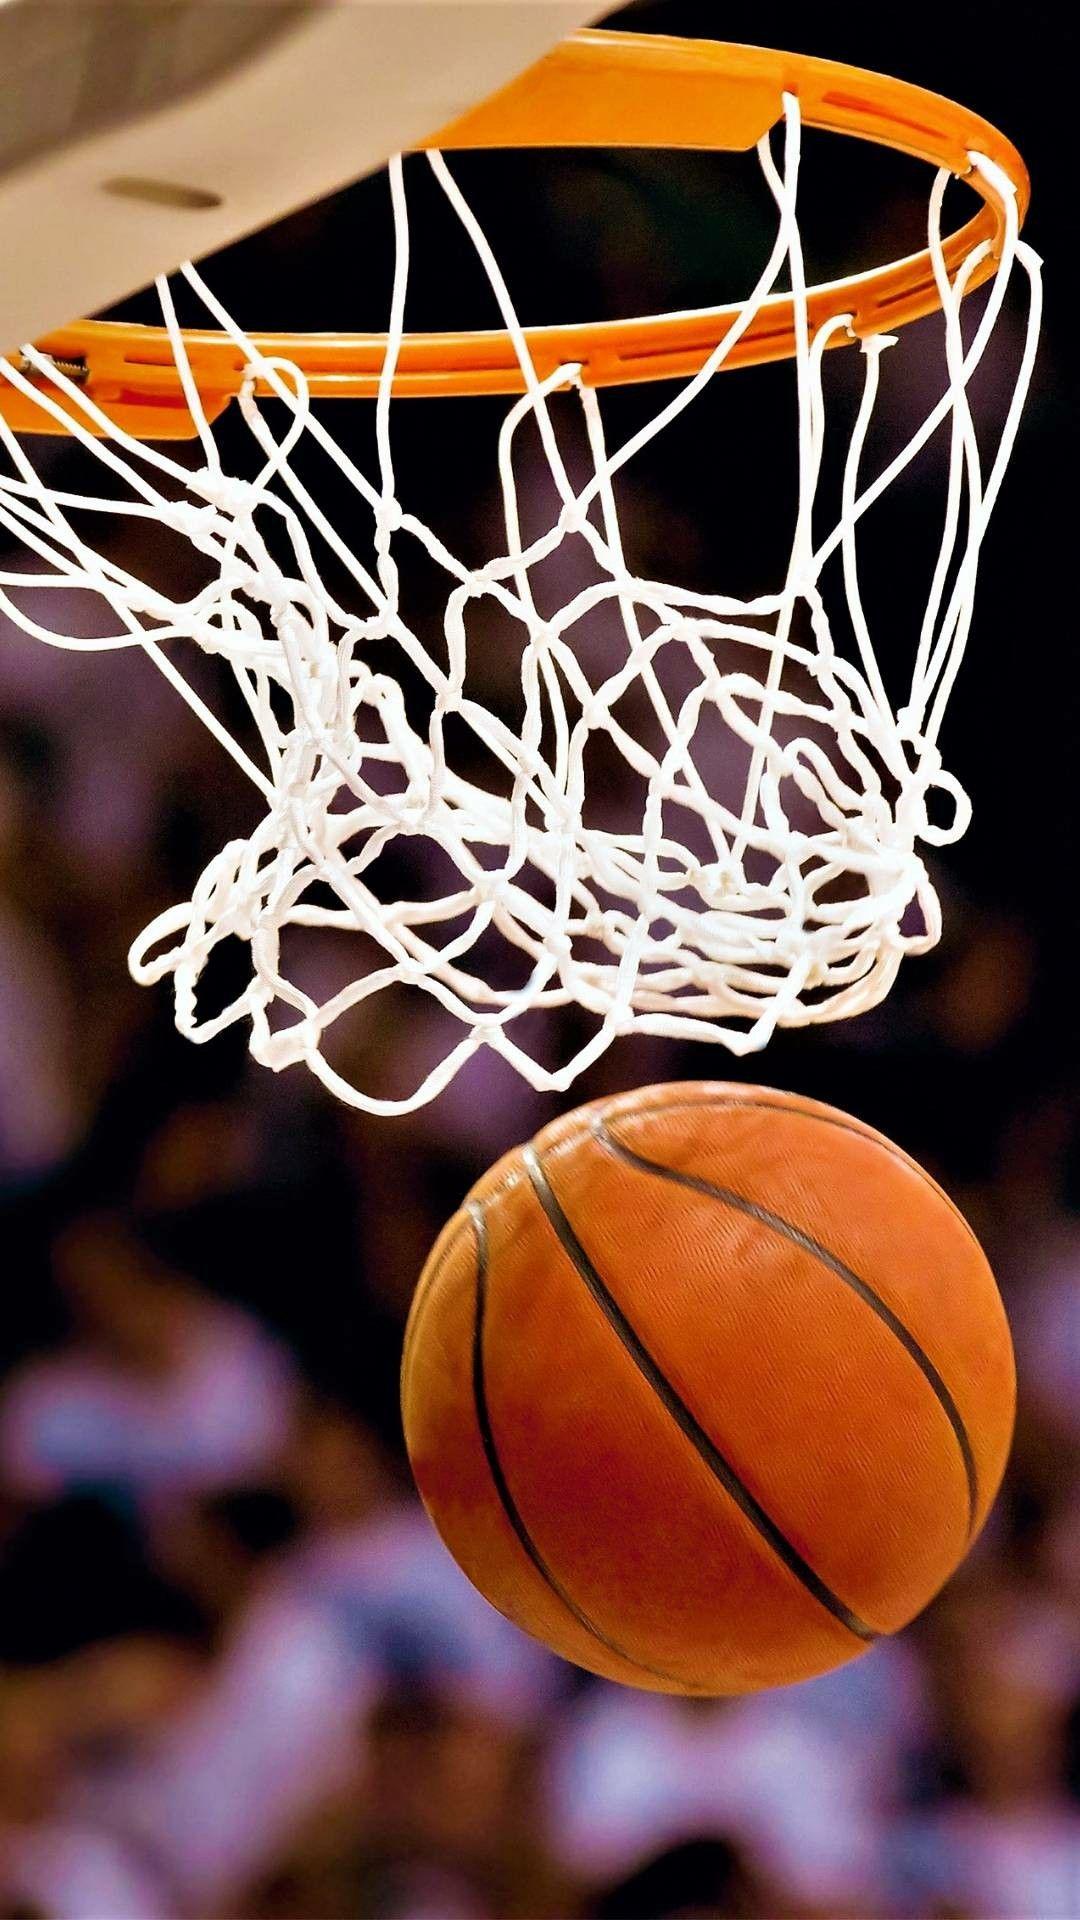 1080 x 1920 · jpeg - Basketball hoop wallpaper | Basketball wallpaper, Basketball hoop ...